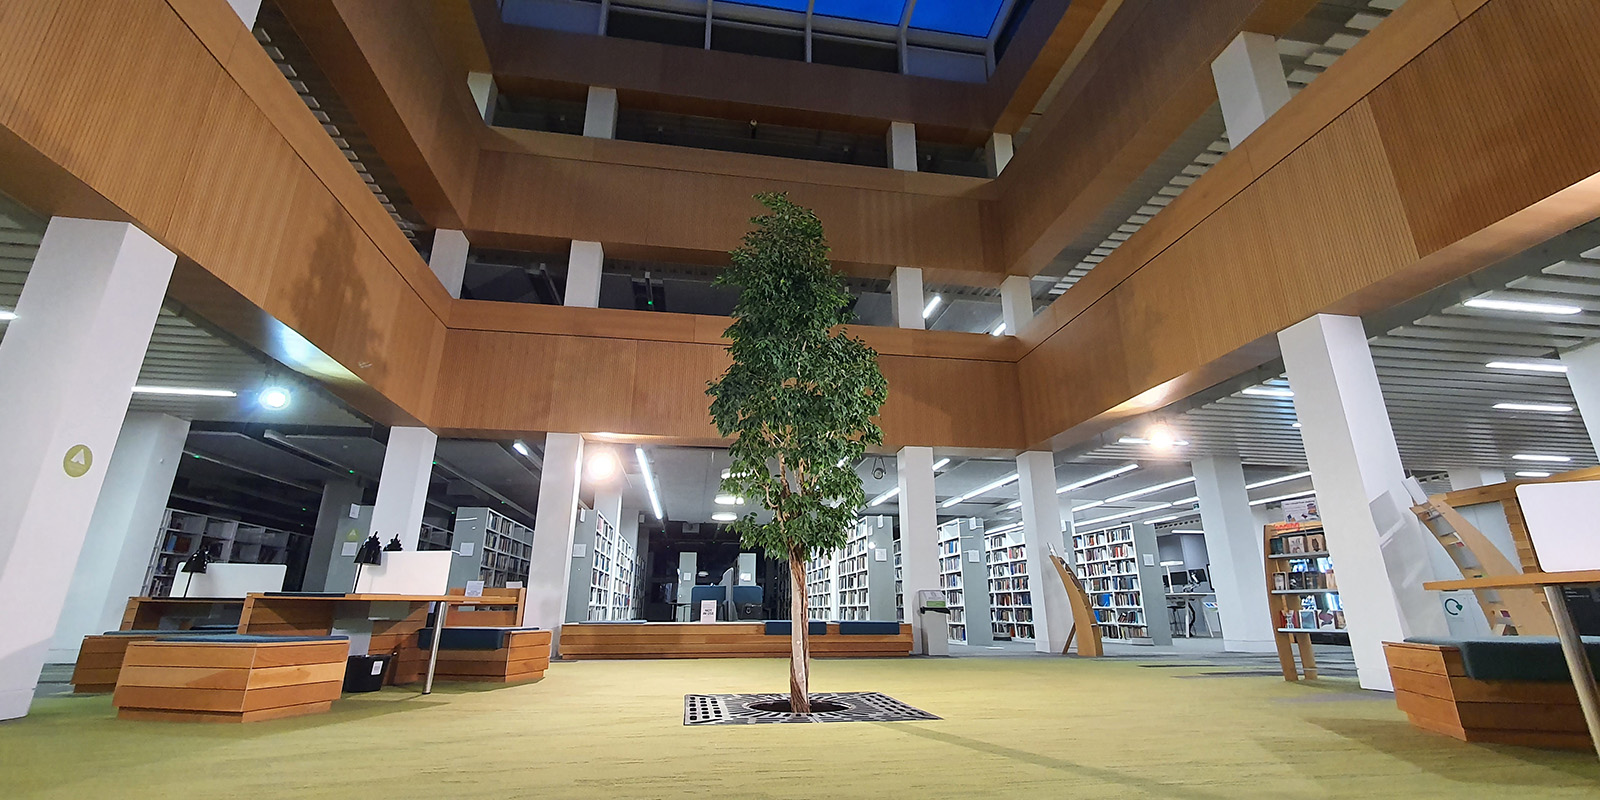 51福利 library foyer with the living tree in the centre.